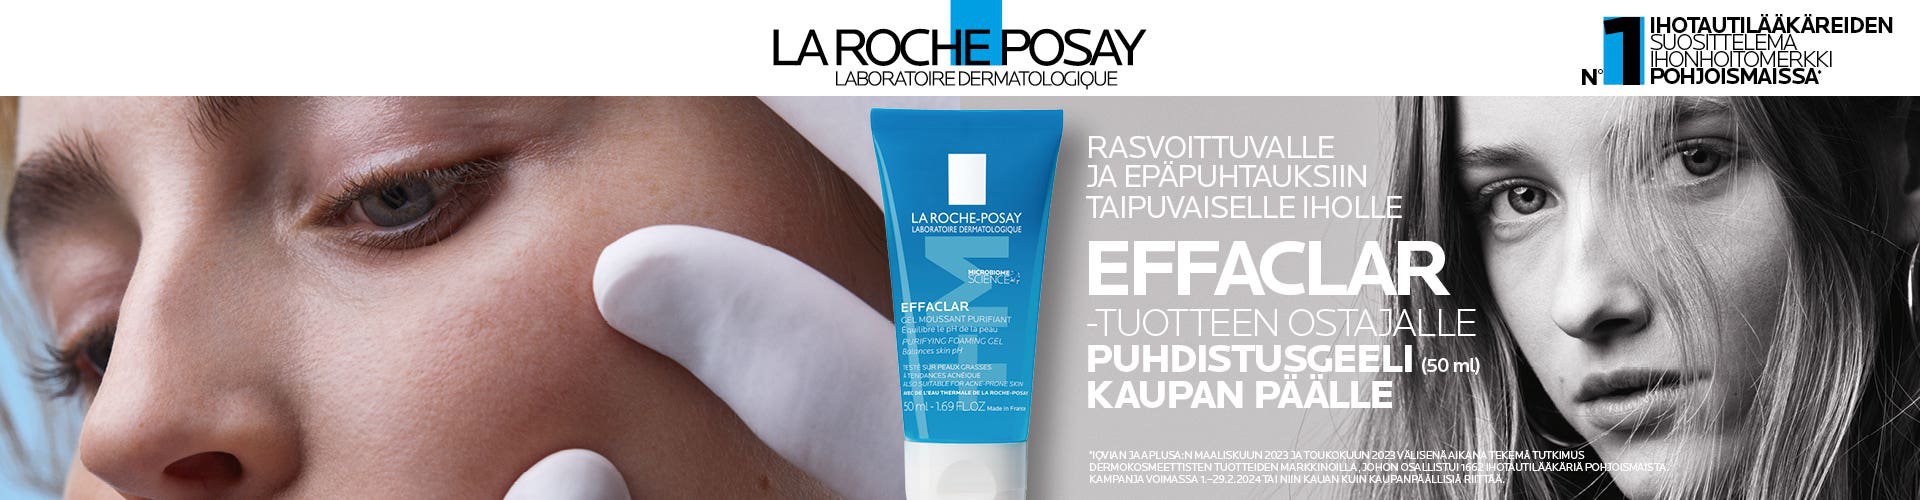 La Roche-Posay Effaclar tuotteen ostajalle puhdistusgeeli kaupan päälle